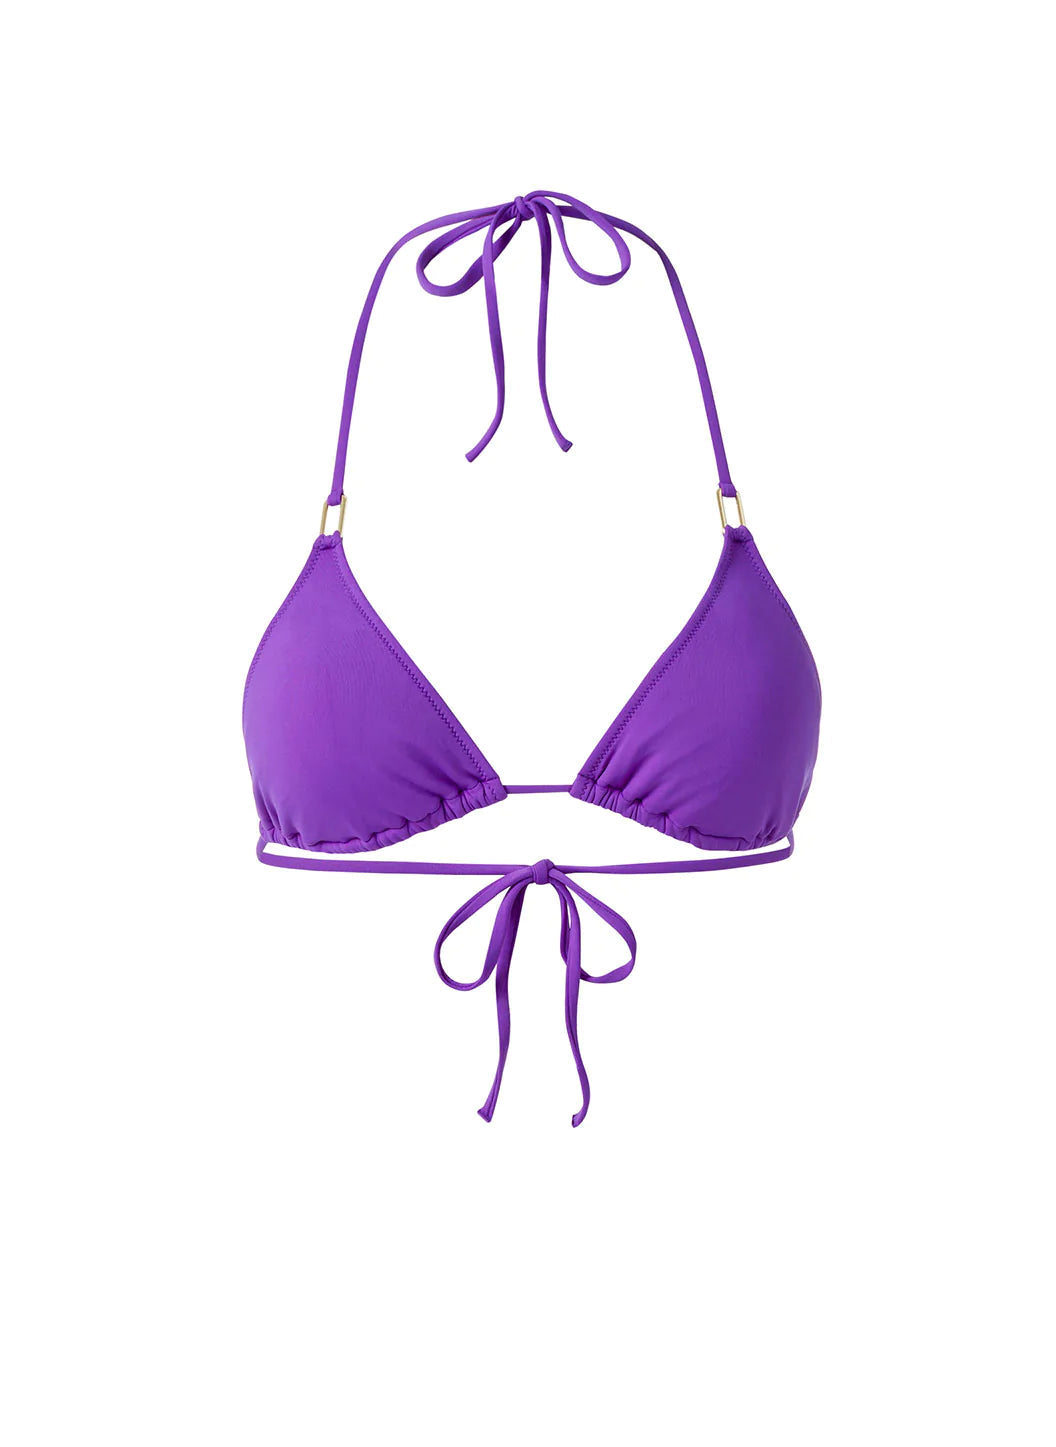 Cancun Violet Bikini Top Cutout 2023  